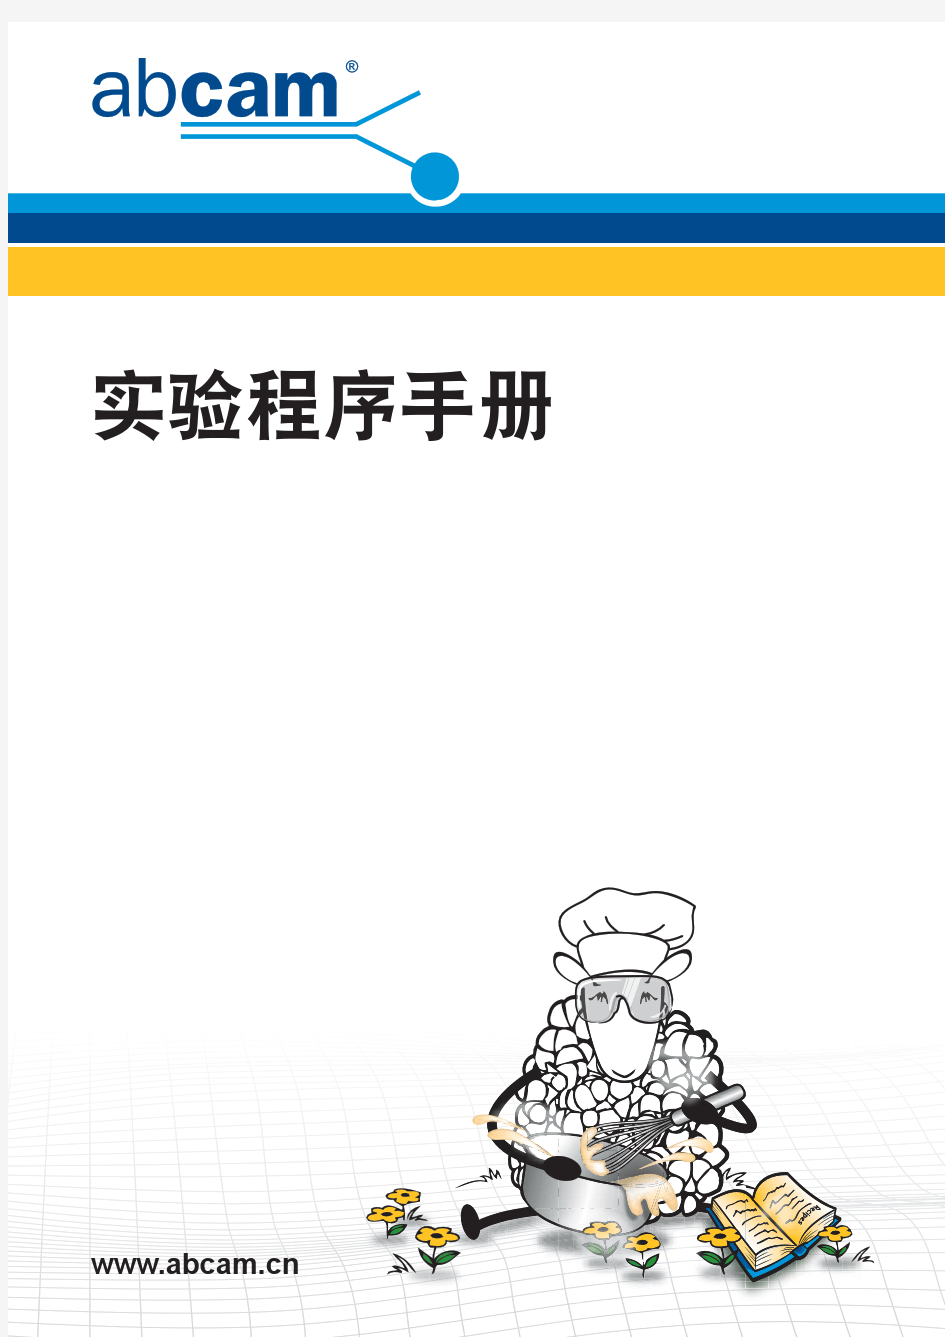 abcam中文实验手册